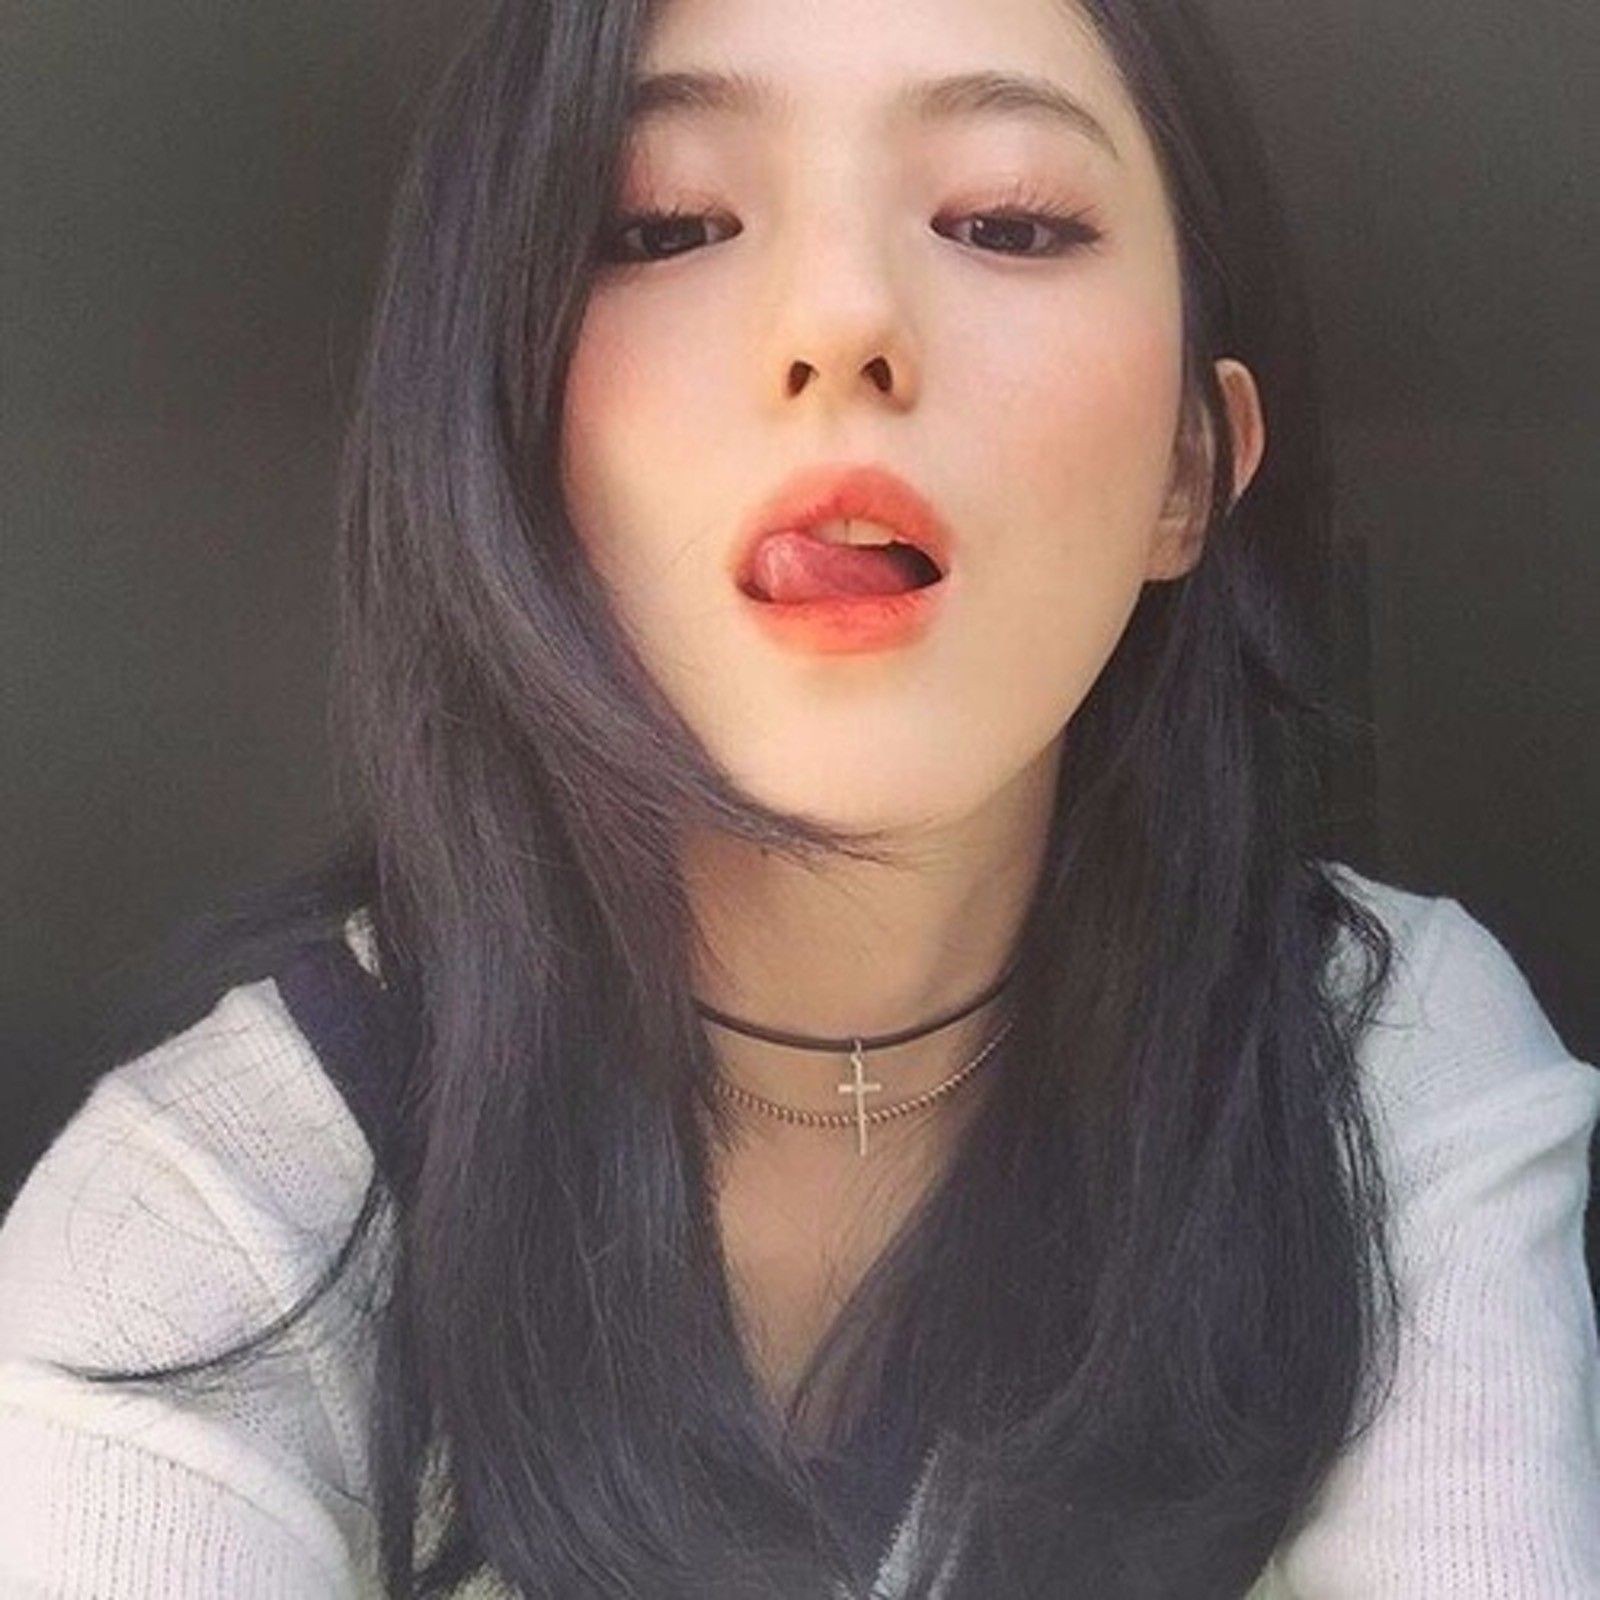 Korean photo